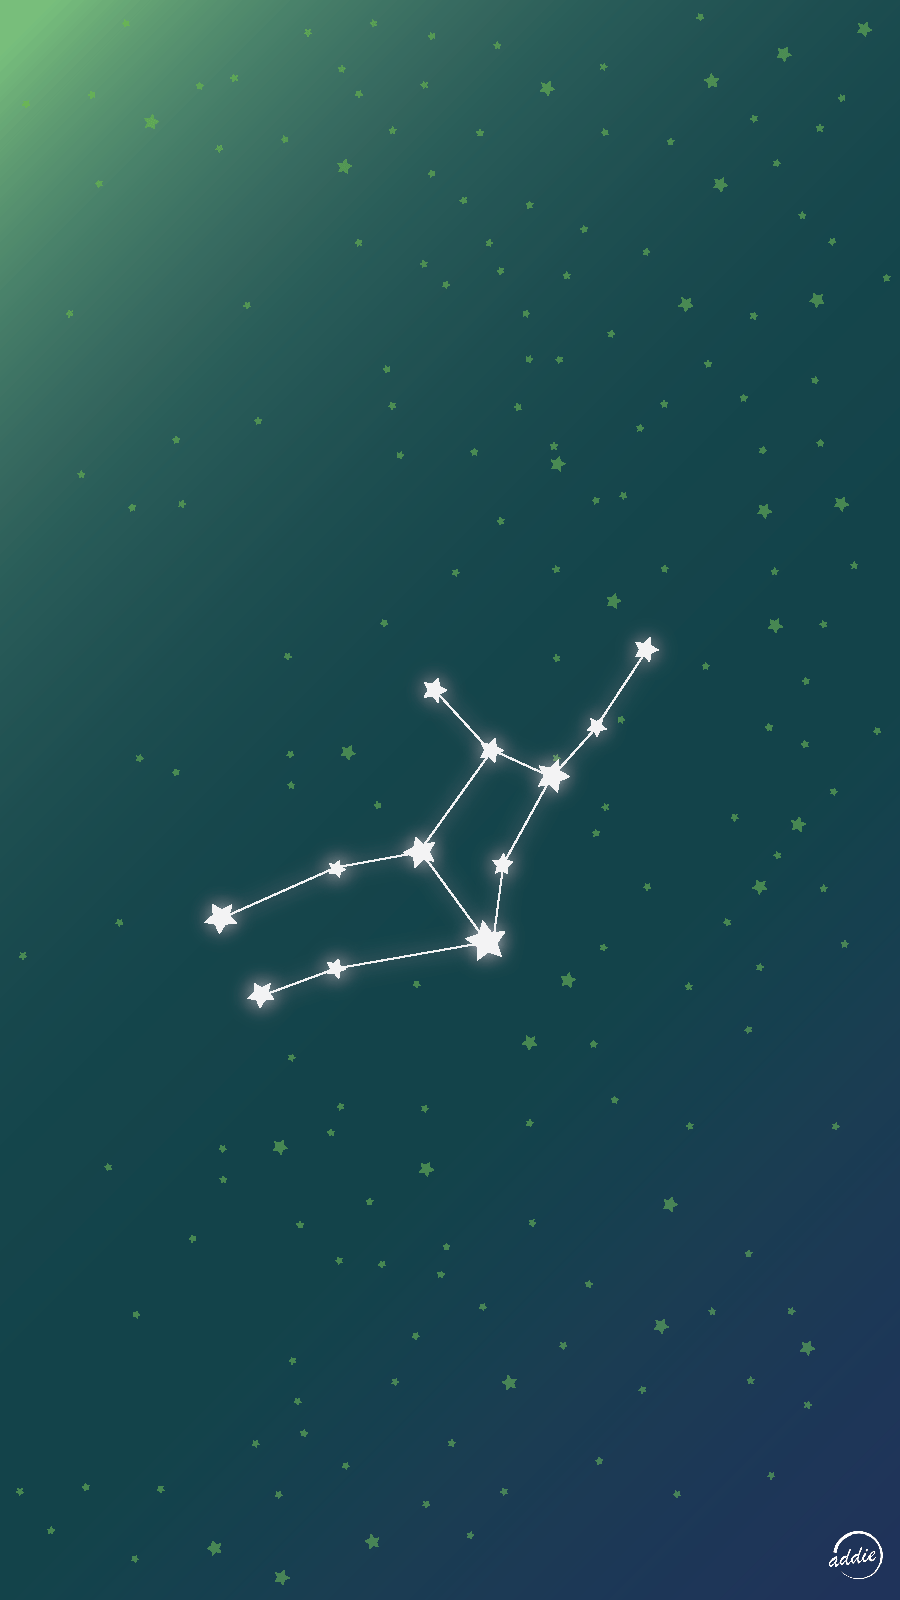 Virgo Vector Wallpaper. Virgo star constellation, Virgo constellation, Virgo star